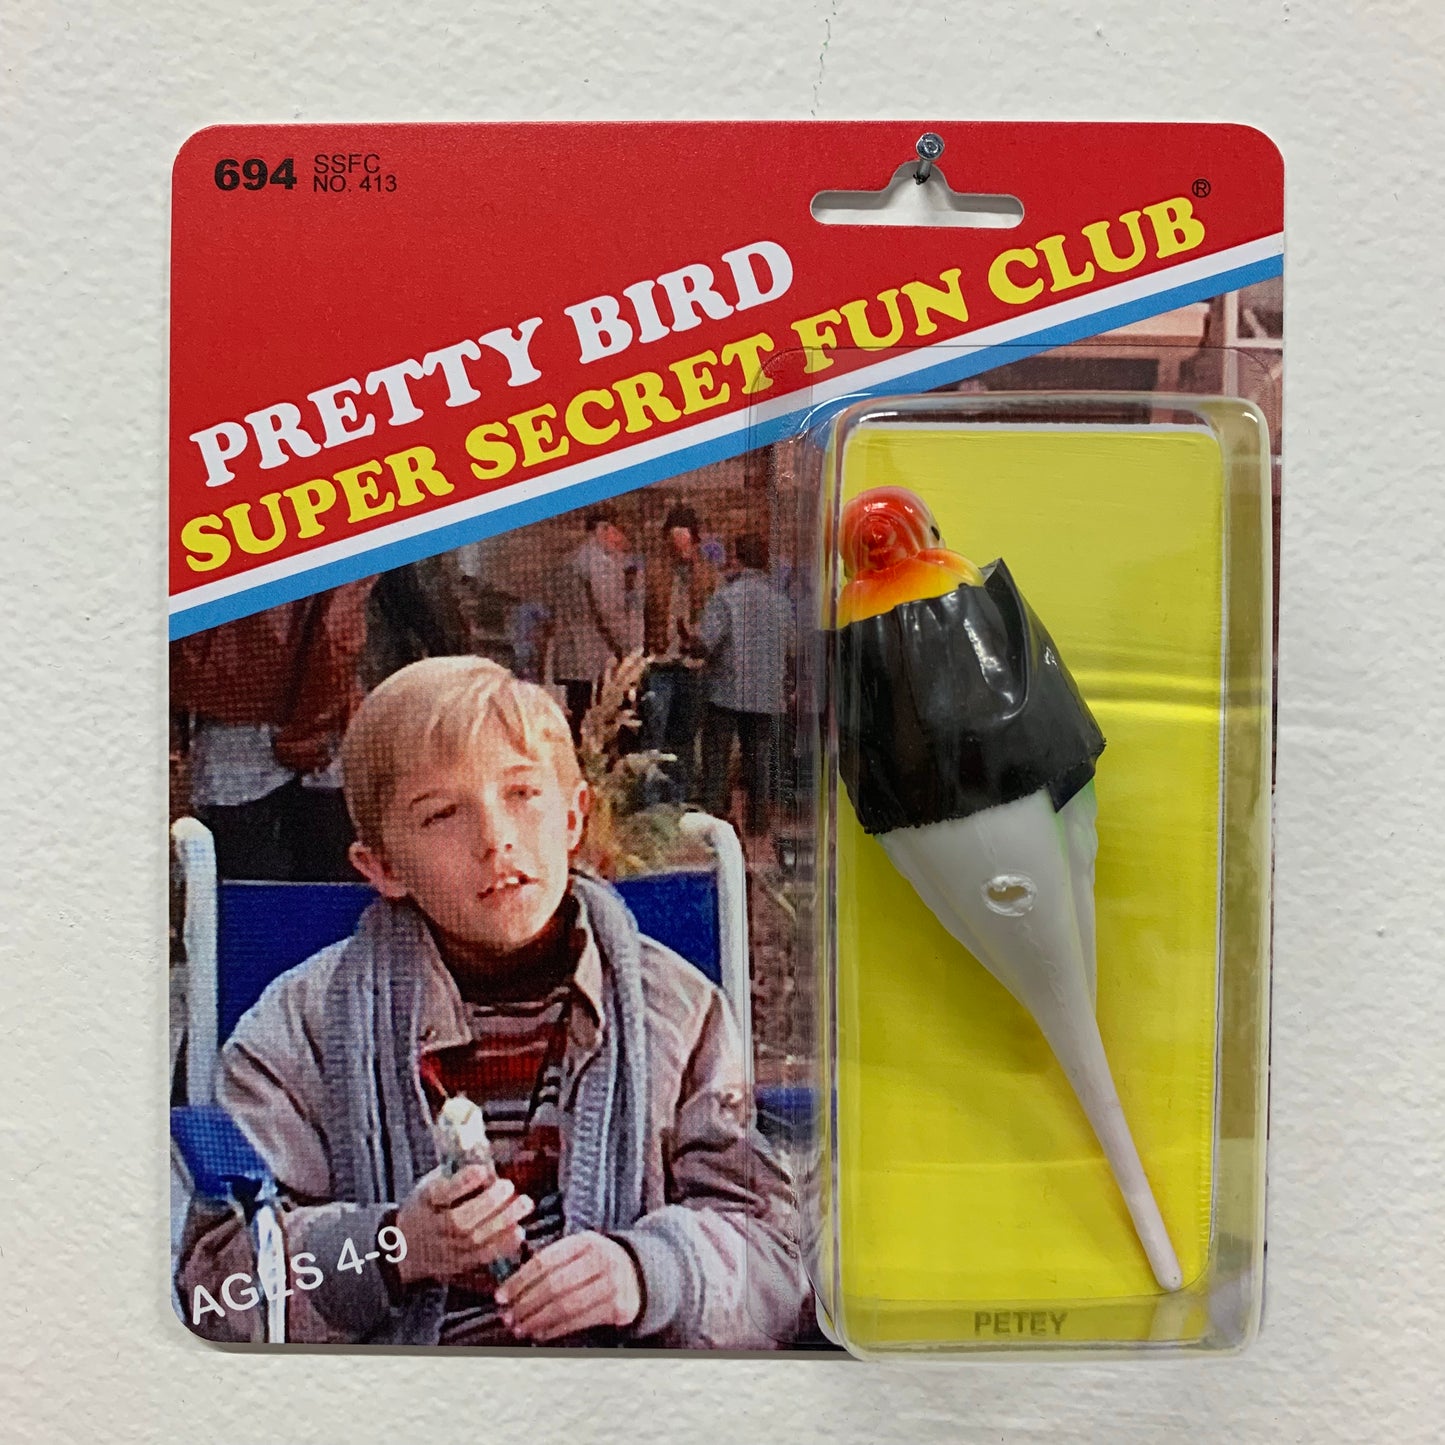 Super Secret Fun Club "Petey" BNG Edition